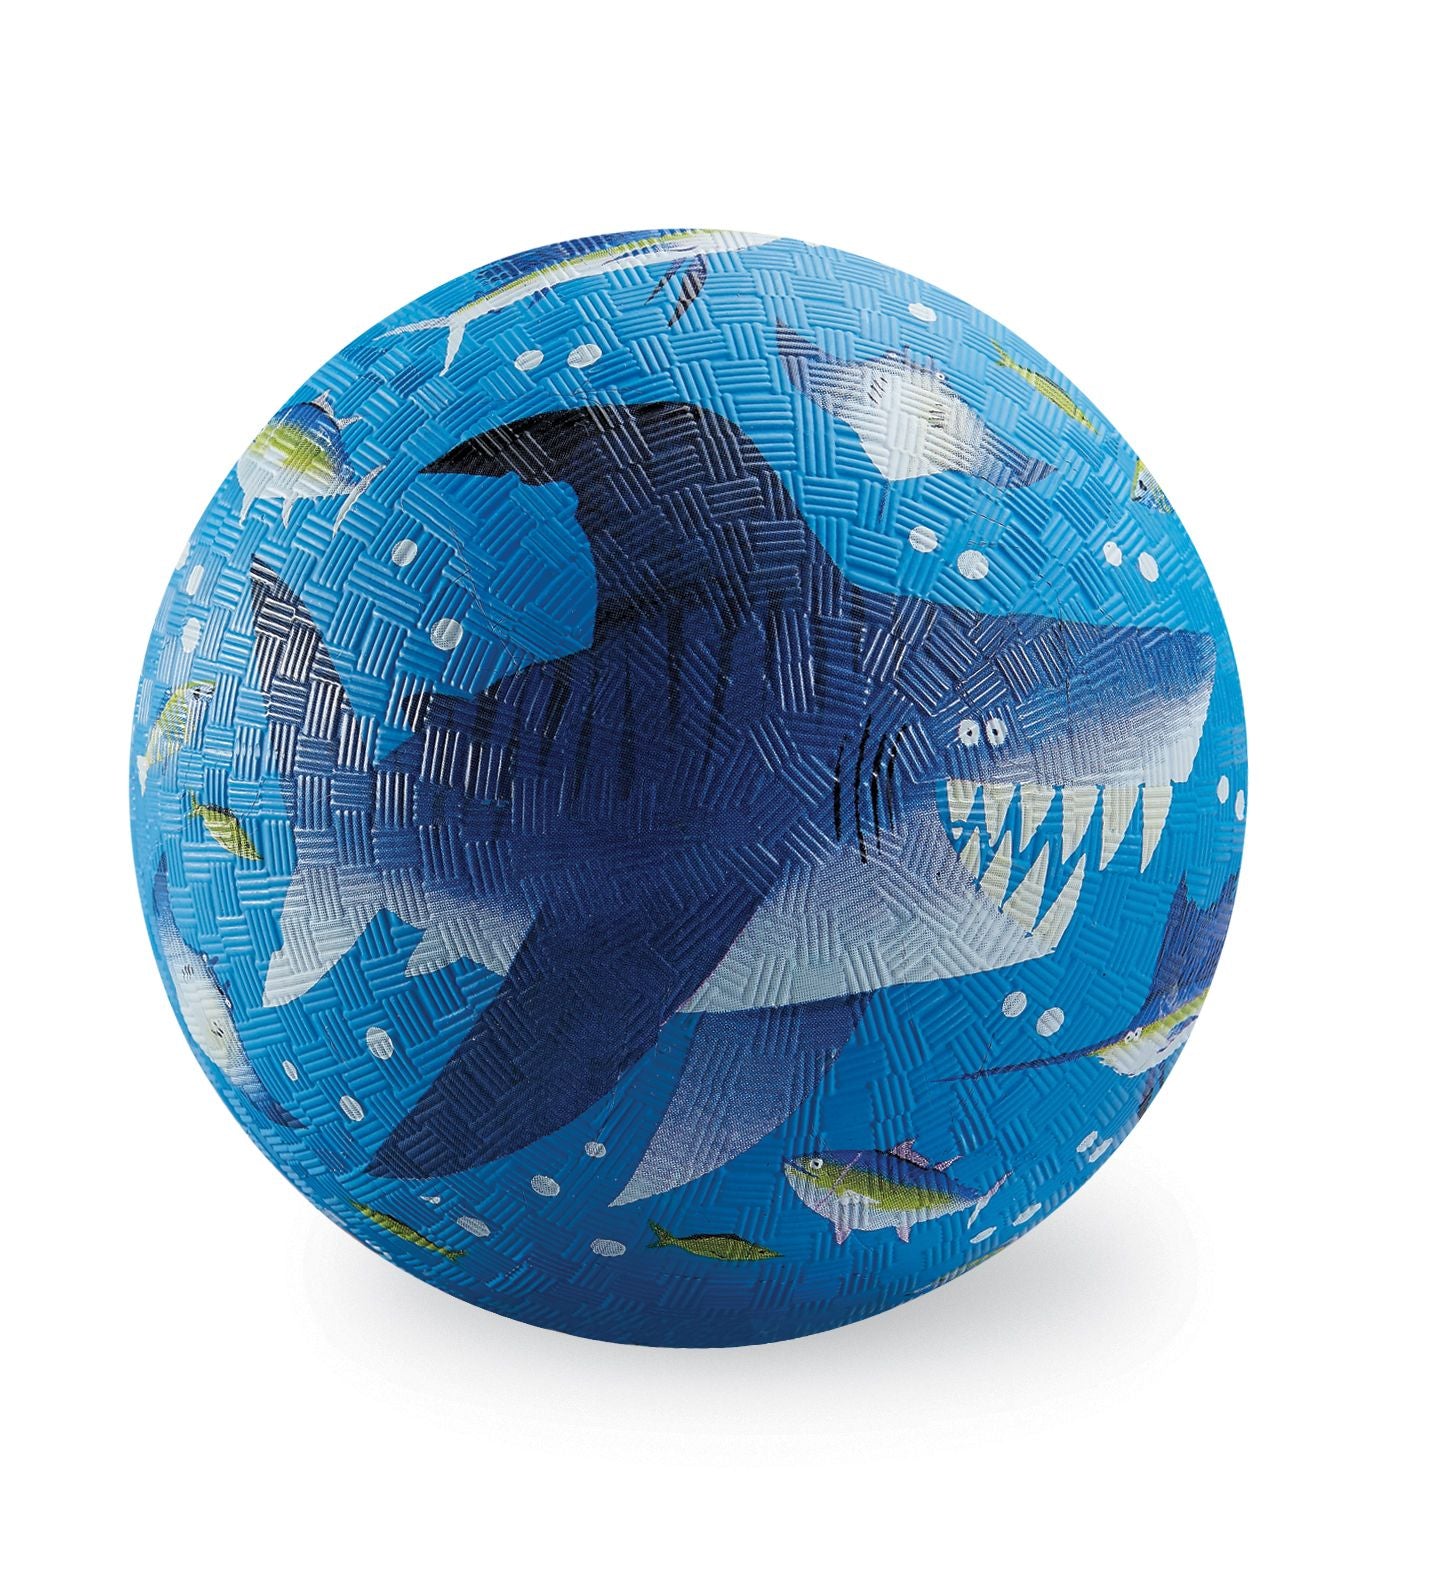 5" Playground Ball - Shark Reef